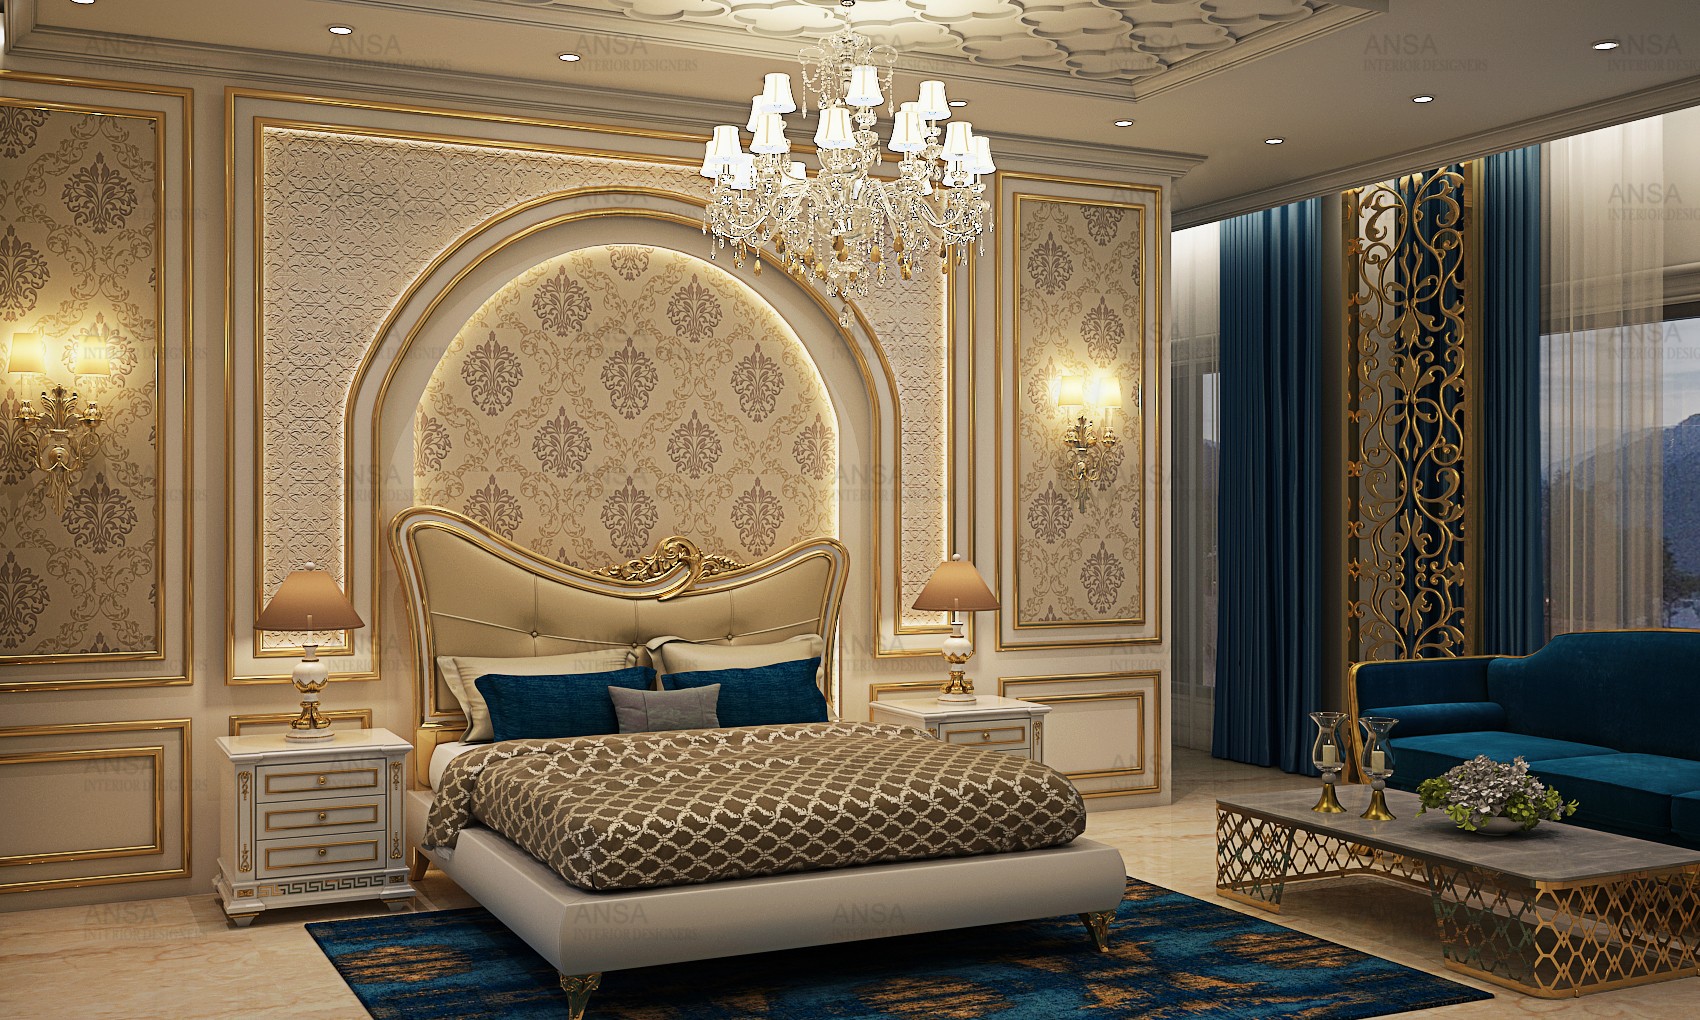 Luxury knows no end. Bedroom at Srinagar.